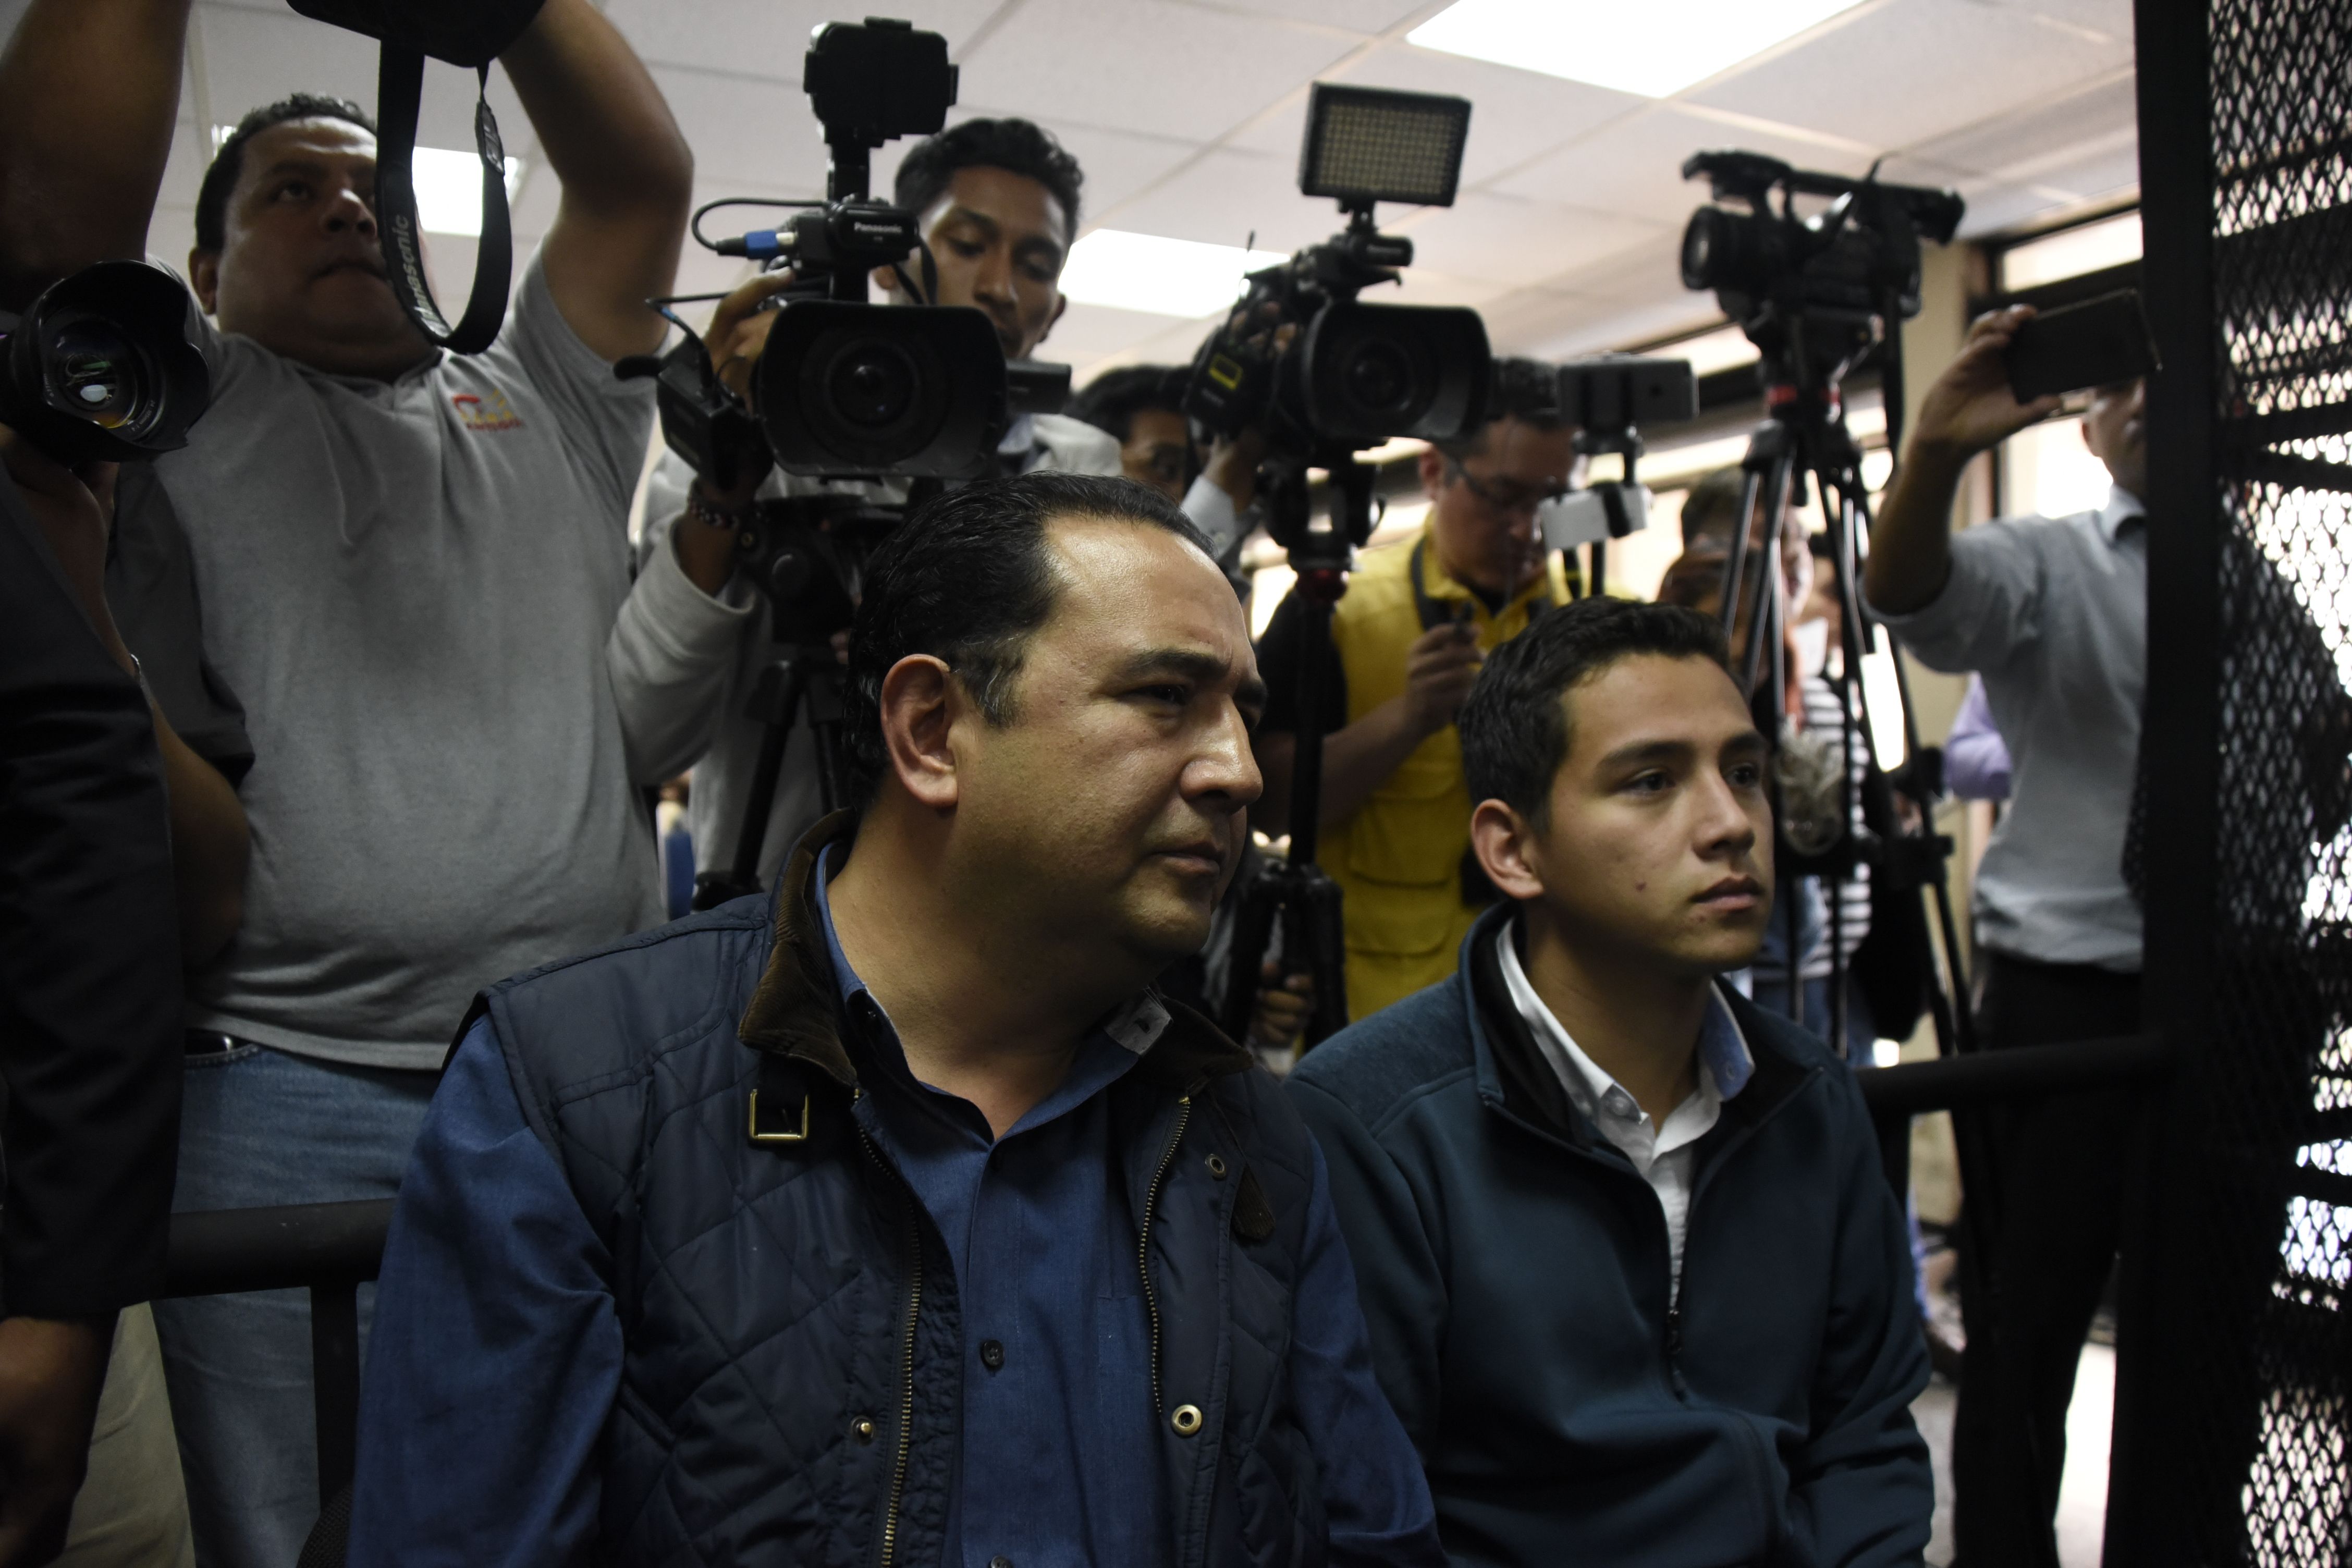 Josué Manuel Morales y Samuel Morales Cabrera comparecen ante la corte en Ciudad de Guatemala. (Crédito: JOHAN ORDONEZ/AFP/Getty Images)